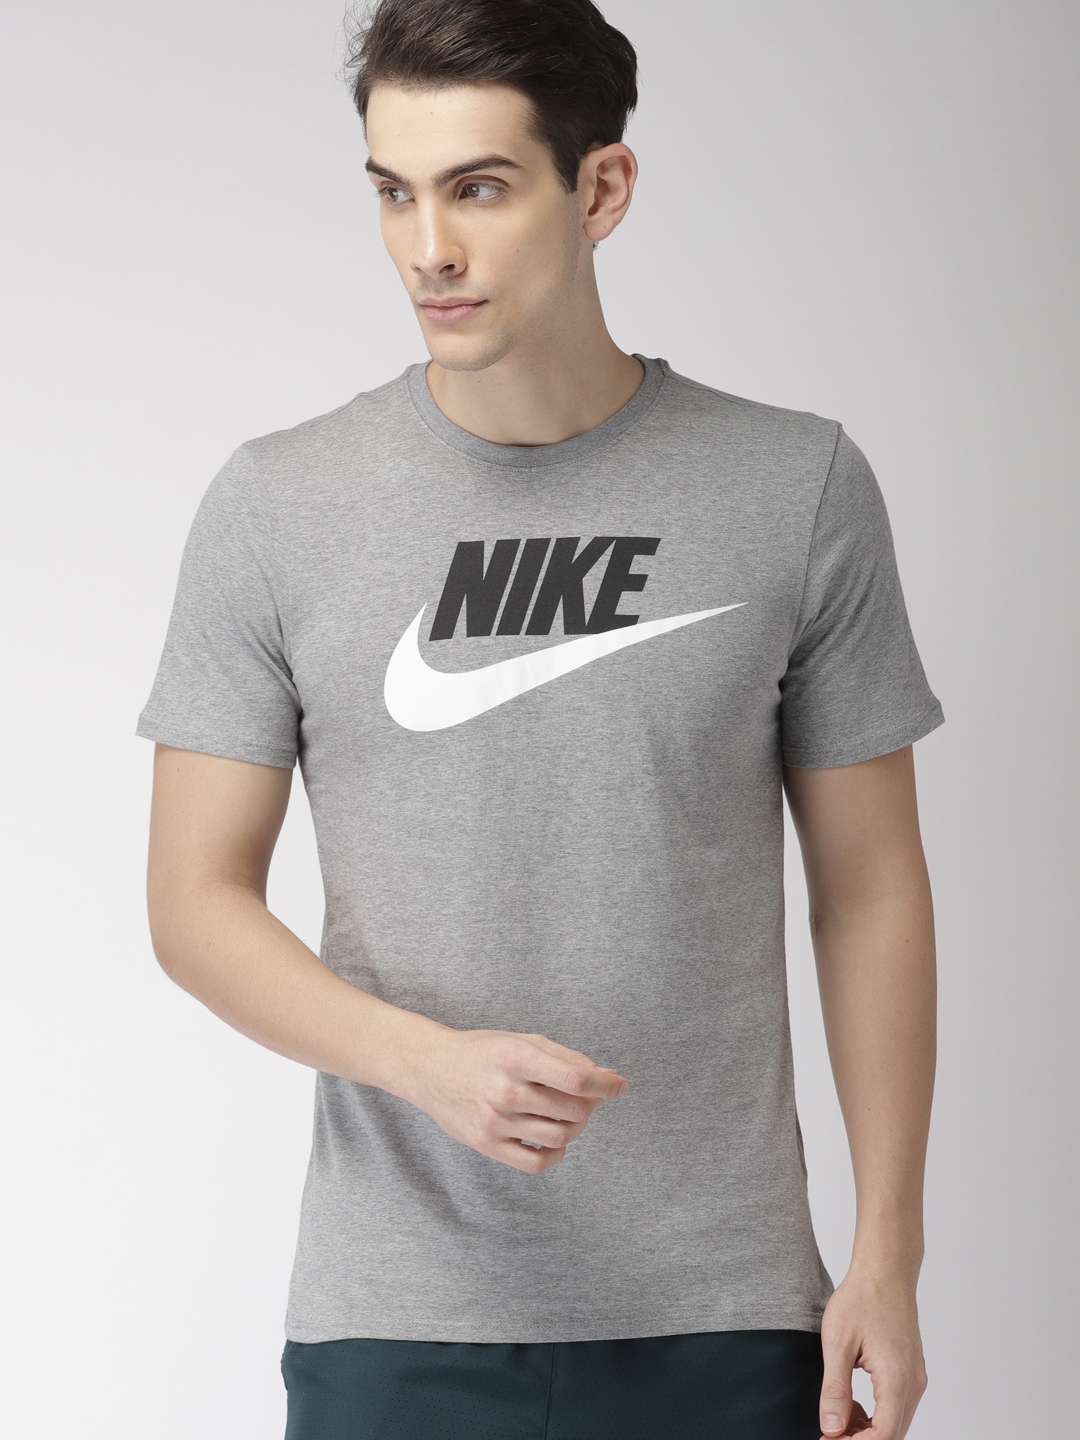 Buy Nike Men Grey Melange Printed Round Neck T Shirt - Tshirts for Men ...